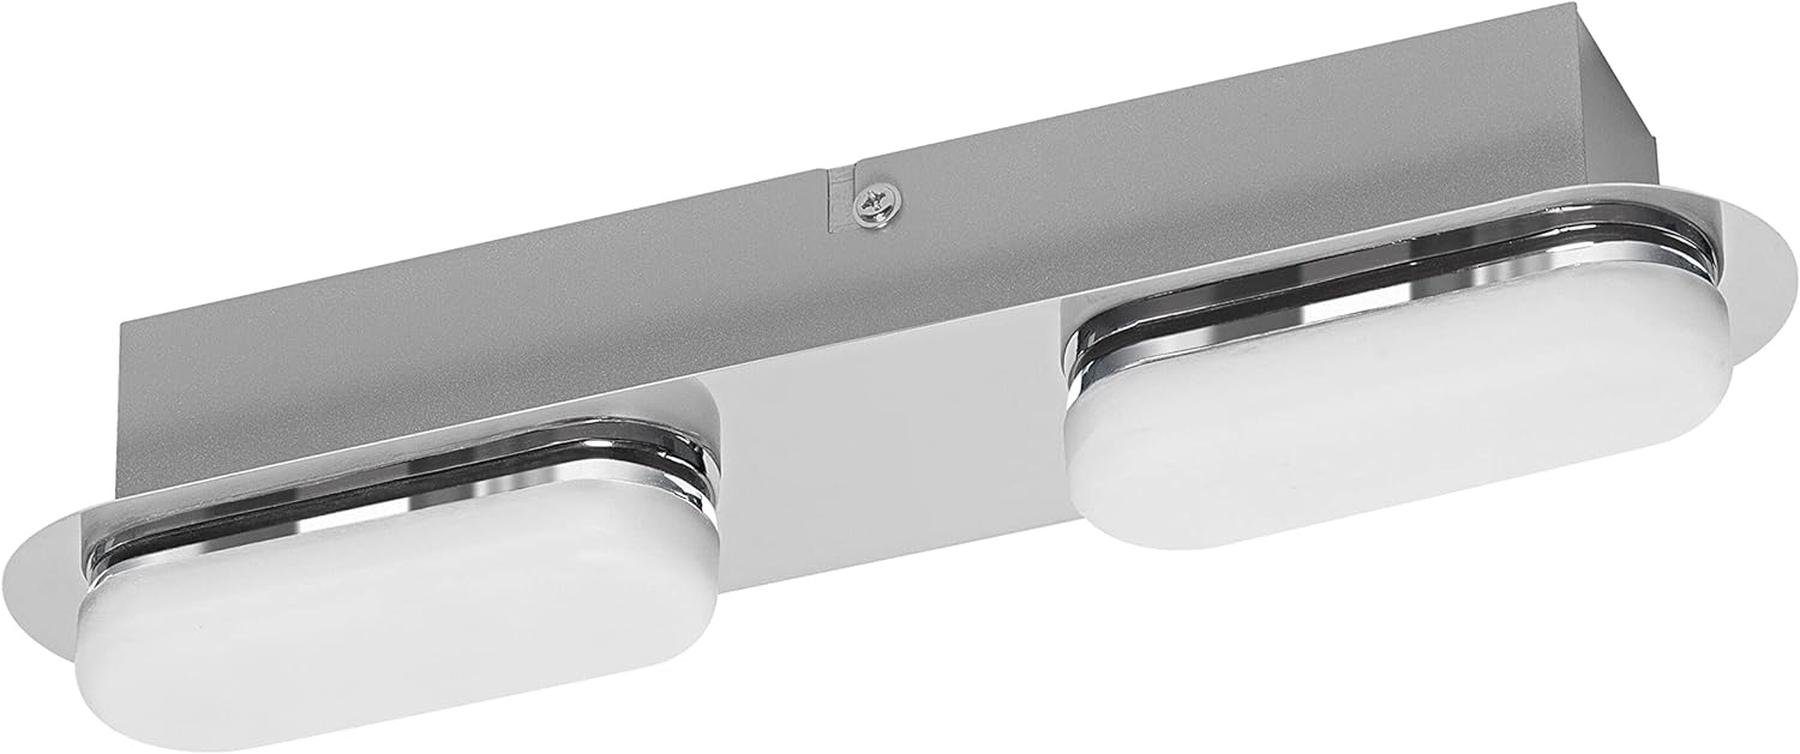 Einbauleuchte LED LED Ledvance cm chrome, 15W,30 Badezimmerlampe Smart Ledvance